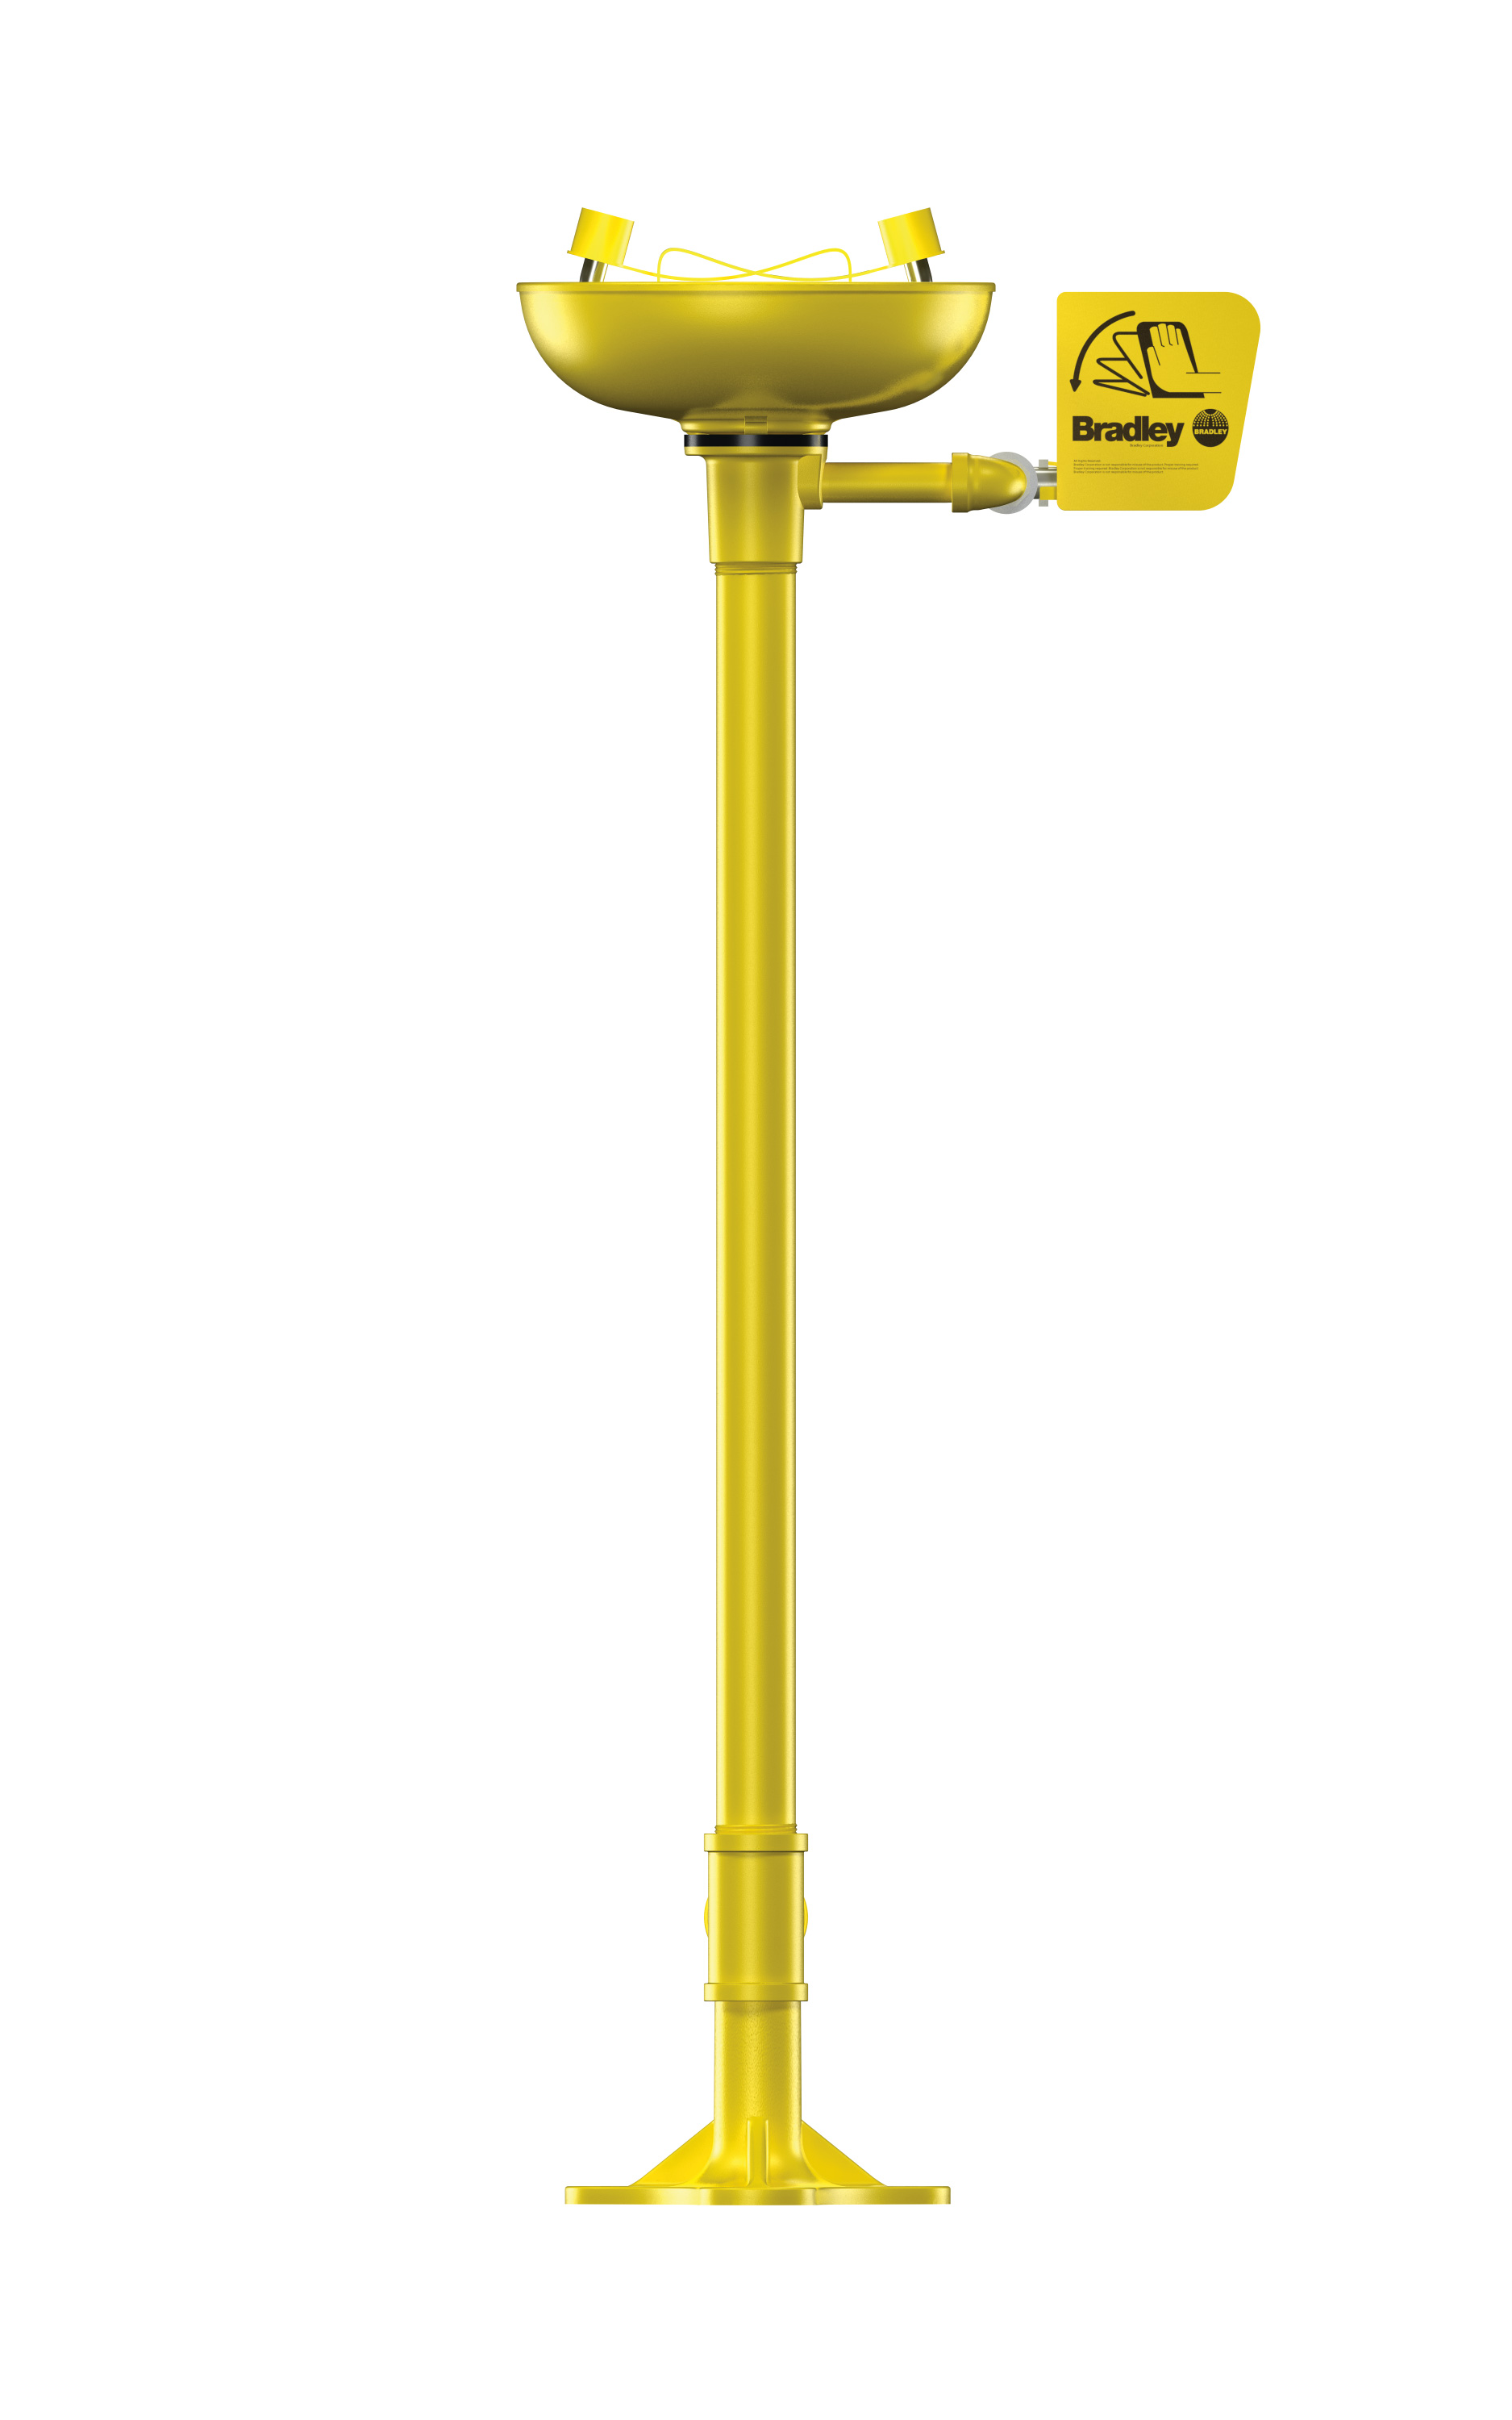 pedestal mounted eyewash - Model S19-210